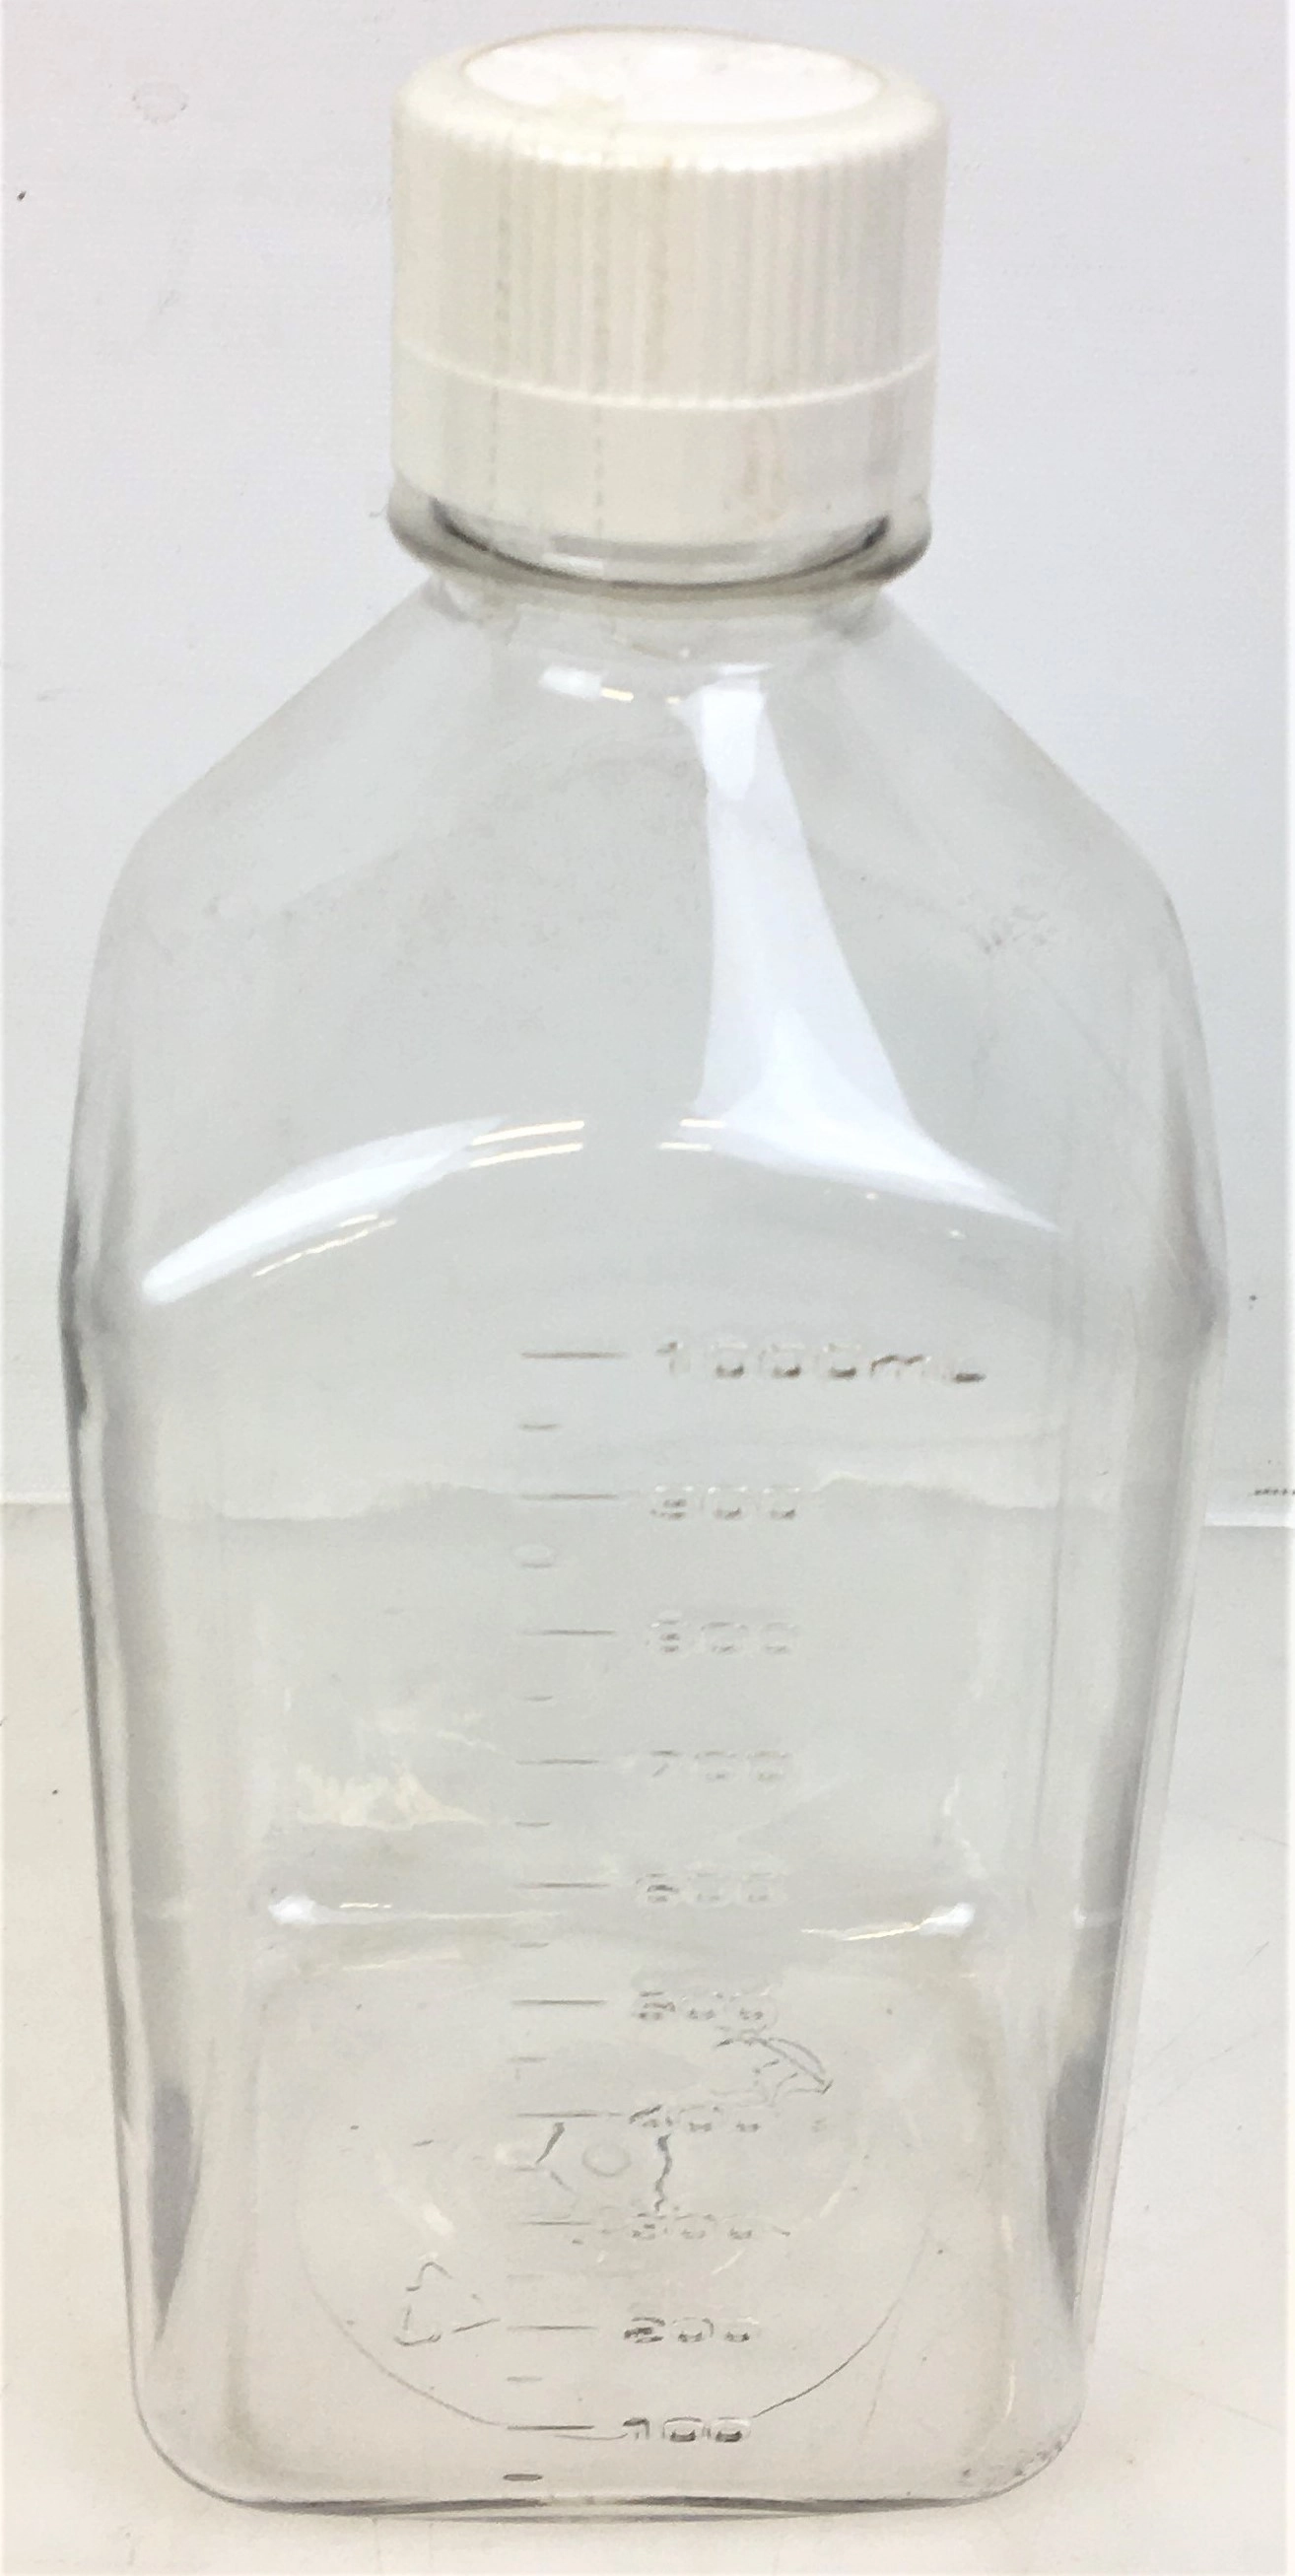 Nalgene 2019-1000 Square Media Bottle with Cap - 1L (Pack of 8)